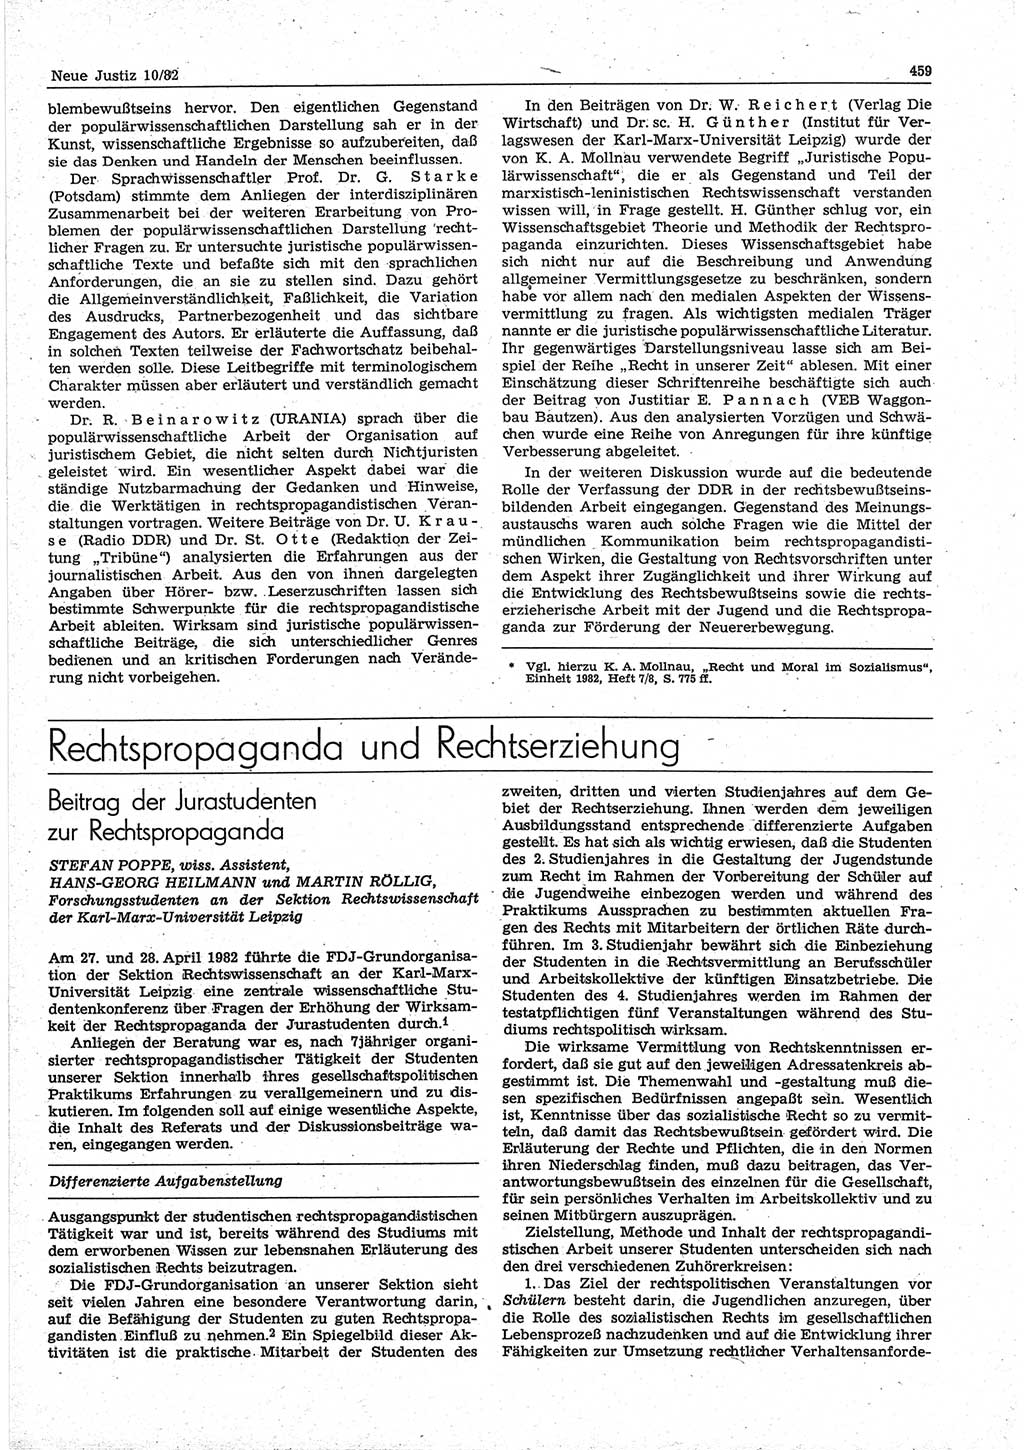 Neue Justiz (NJ), Zeitschrift für sozialistisches Recht und Gesetzlichkeit [Deutsche Demokratische Republik (DDR)], 36. Jahrgang 1982, Seite 459 (NJ DDR 1982, S. 459)